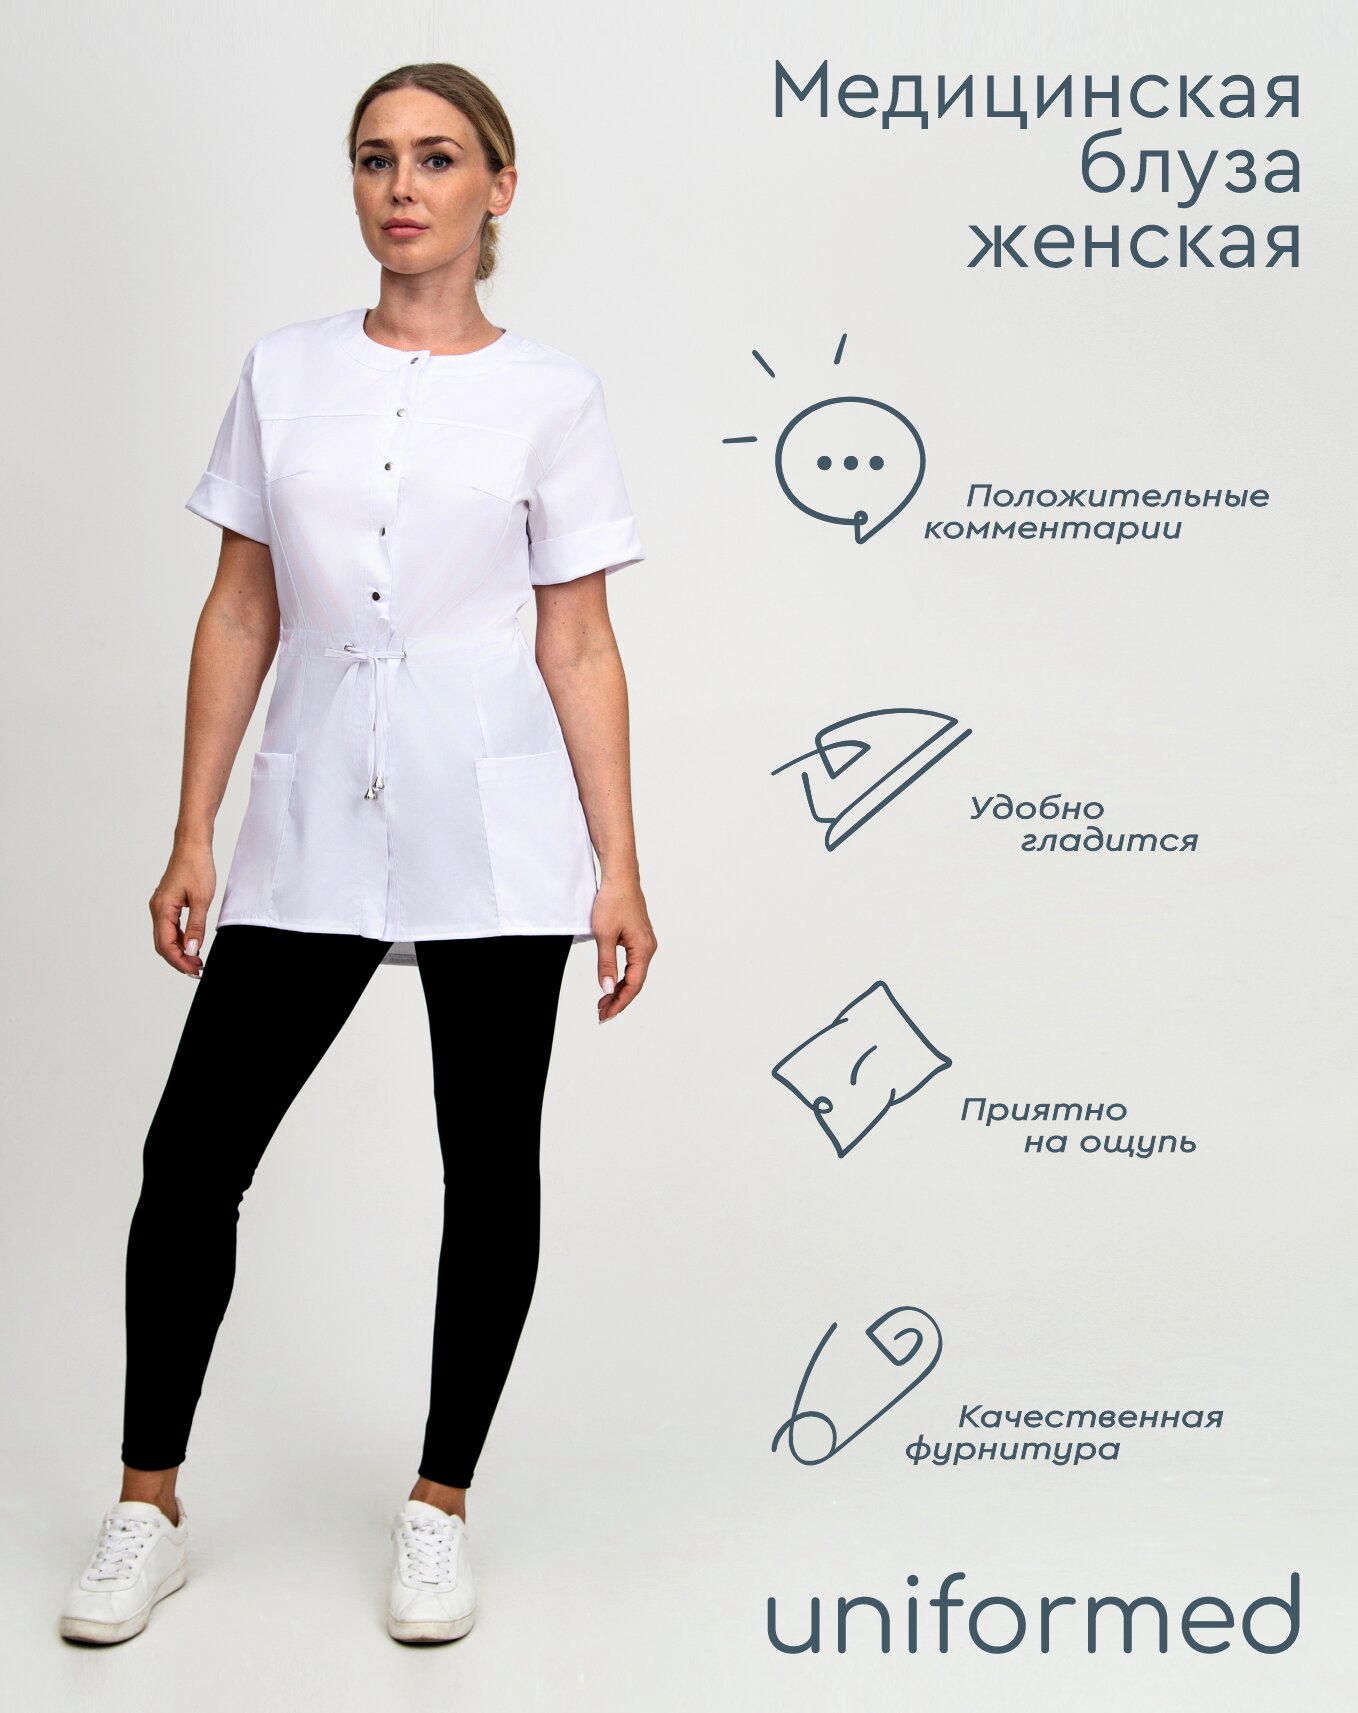 Медицинская женская блуза 404.4.6 Uniformed, ткань сатори стрейч, рукав короткий, цвет белый, рост 170-176, размер 62